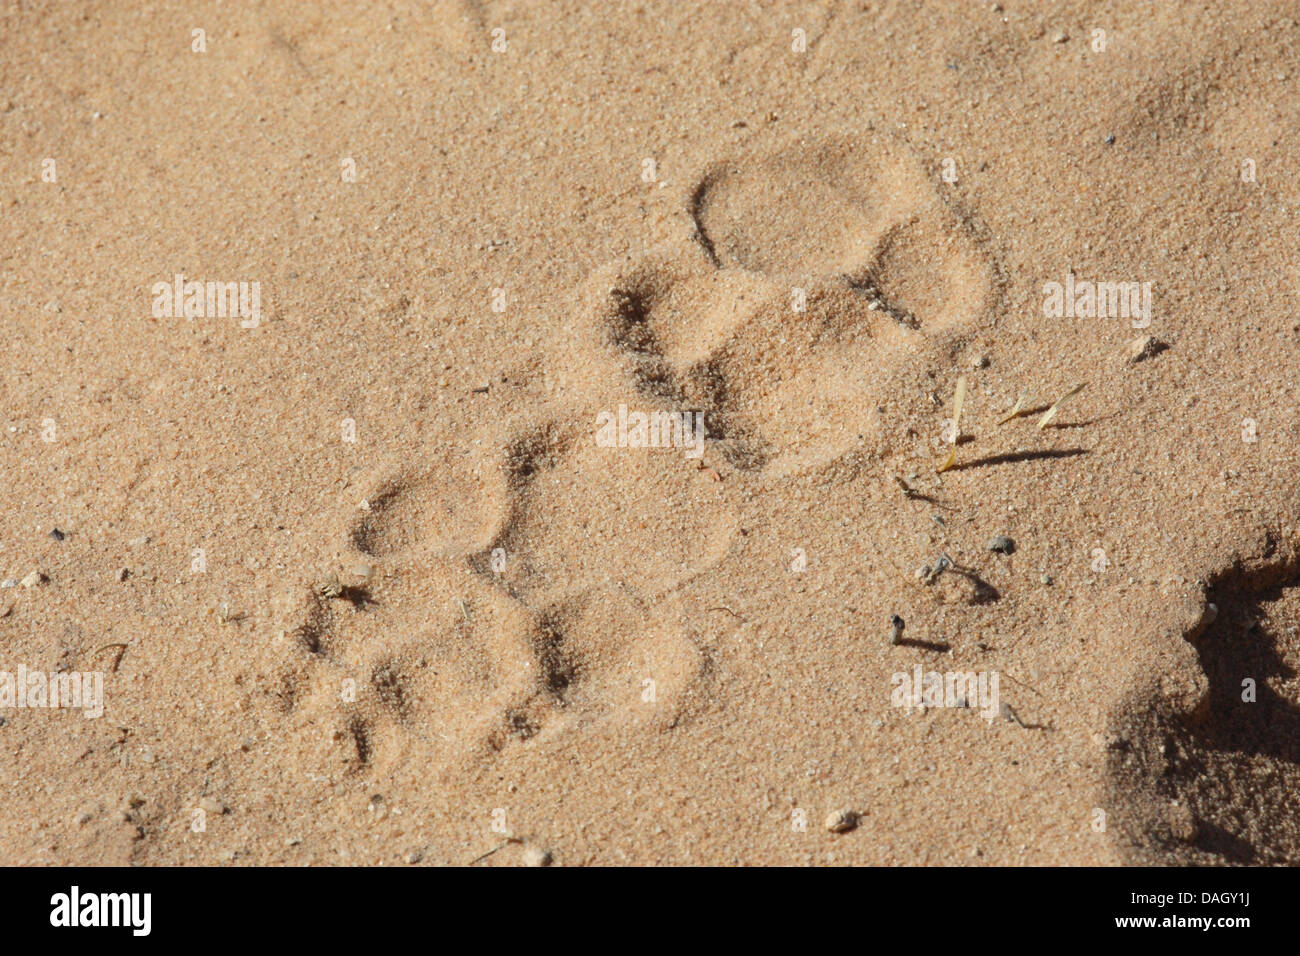 beschmutzte Hyänen (Crocuta Crocuta), druckt Pfote im Sand, Südafrika Kgalagadi Transfrontier National Park Stockfoto